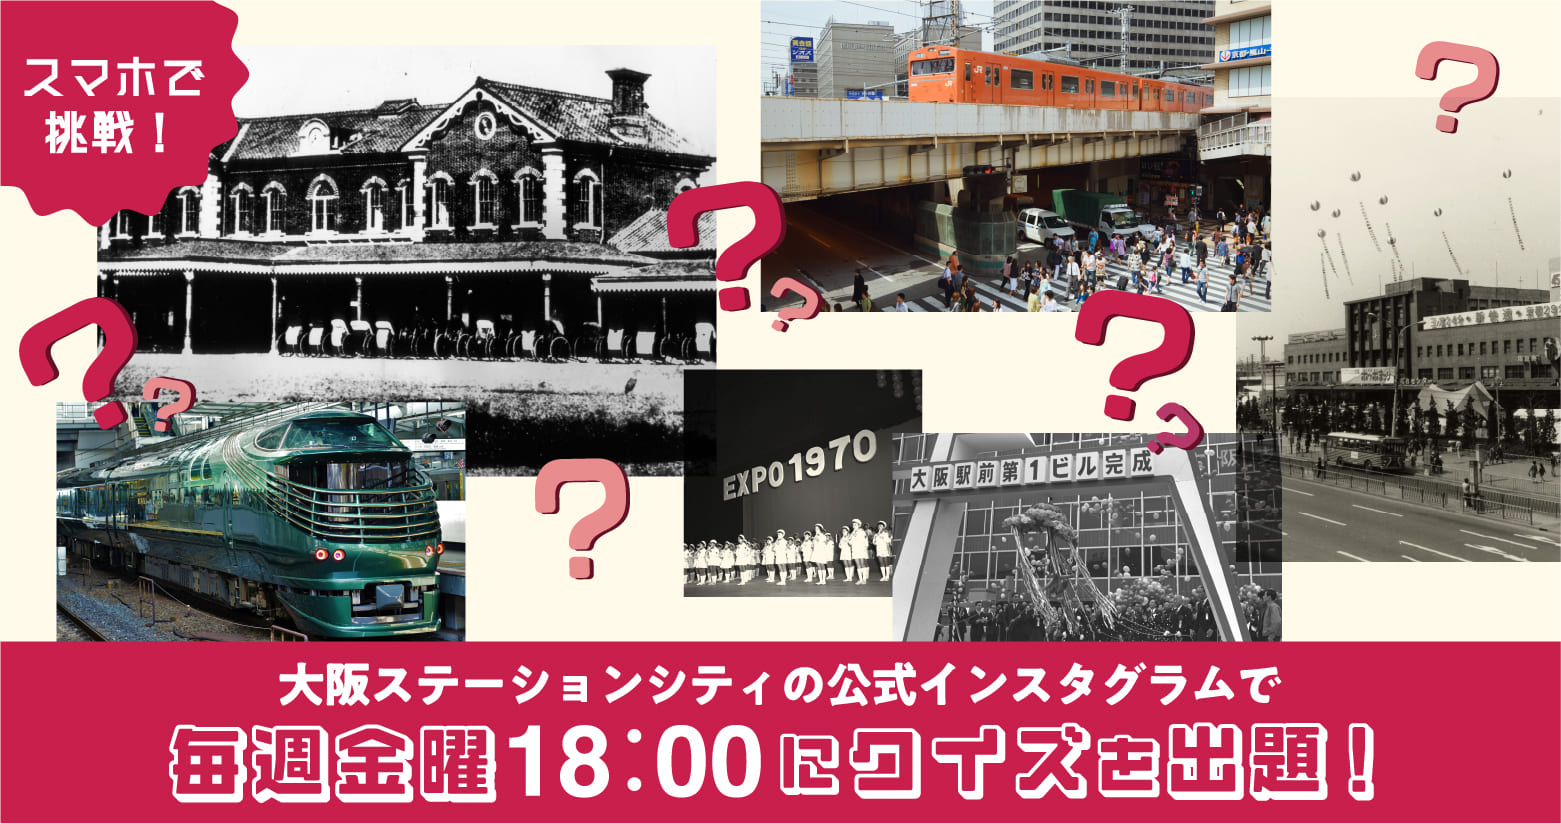 スマホで挑戦！大阪ステーションシティの公式インスタグラムで毎週金曜18:00にクイズを出題!